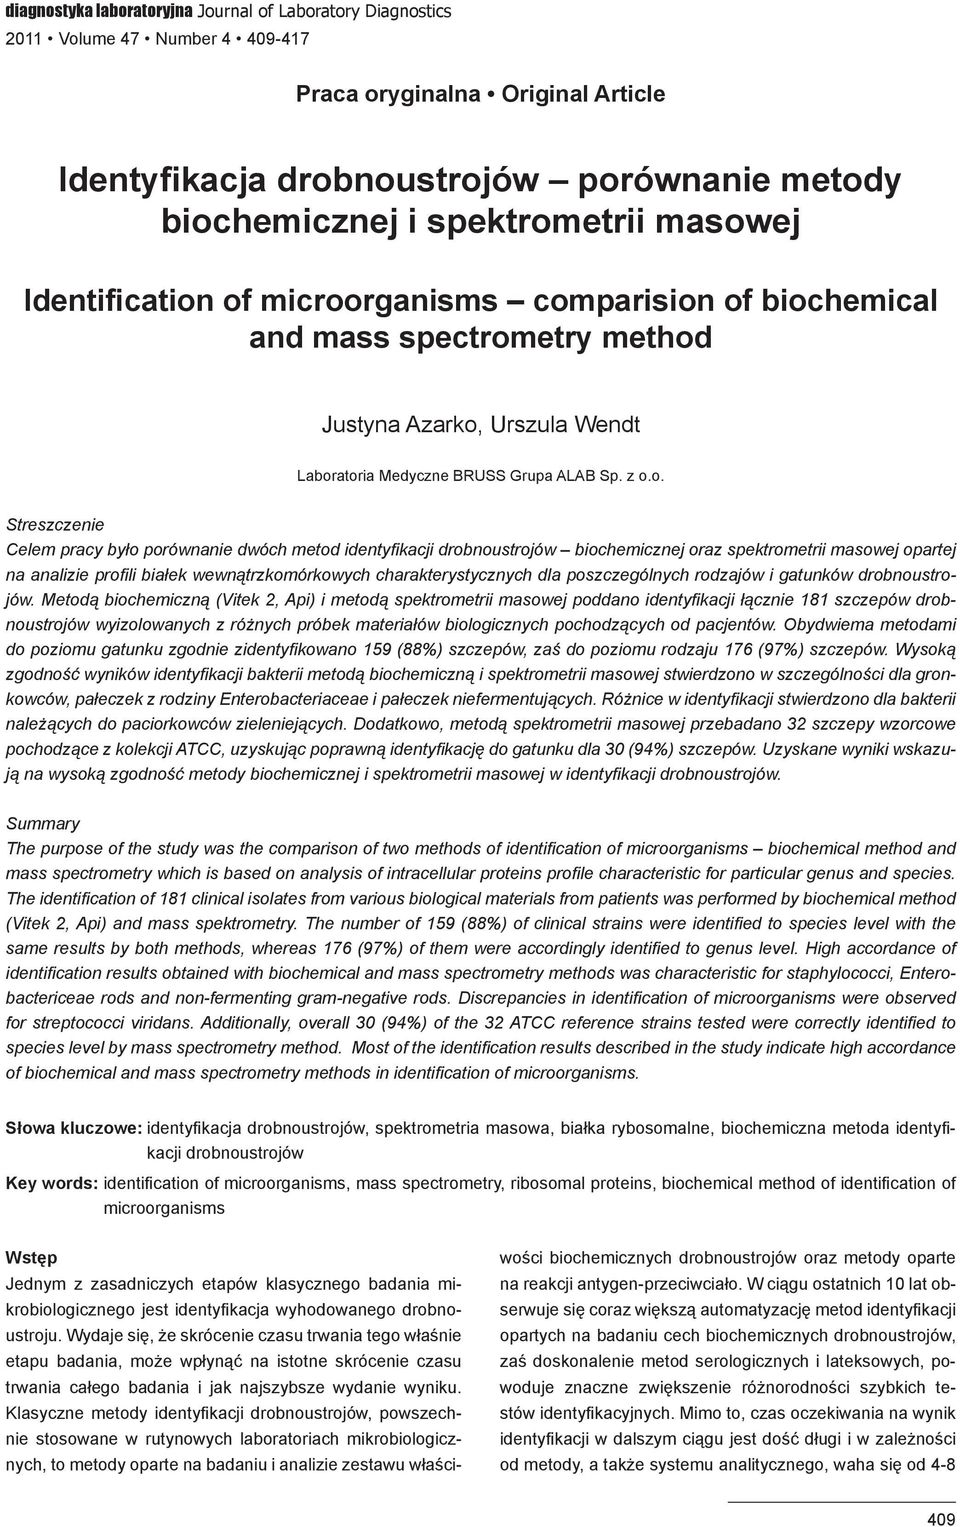 pracy było porównanie dwóch metod identyfikacji drobnoustrojów biochemicznej oraz spektrometrii masowej opartej na analizie profili białek wewnątrzkomórkowych charakterystycznych dla poszczególnych